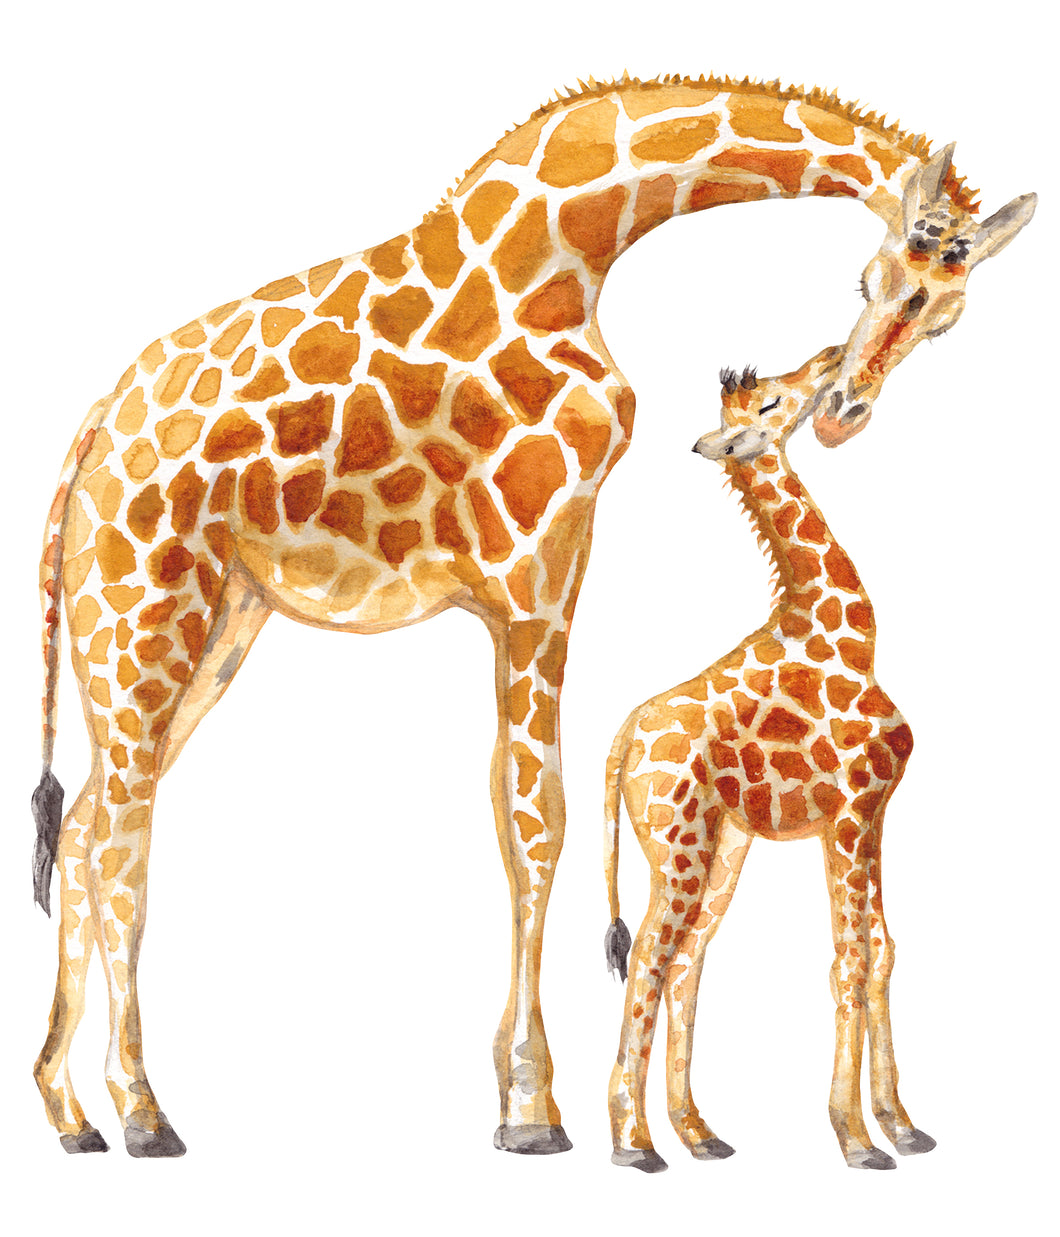 Wallsticker giraffe